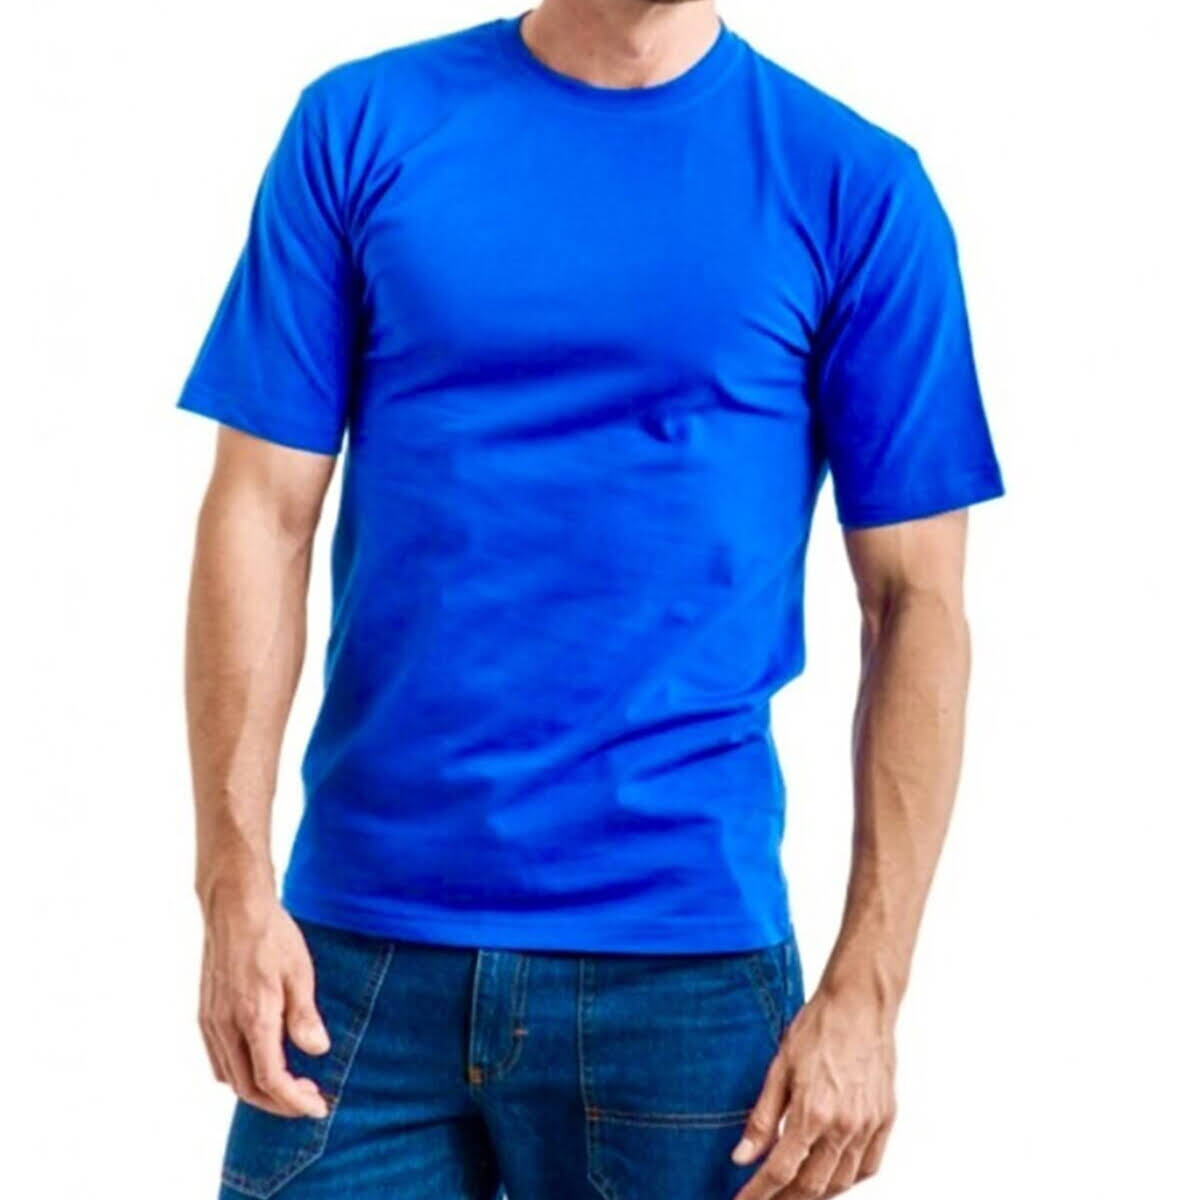 Yuvarlak Yakalı Kısa Kollu Basic baskıya ve nakışa uygun pamuk 1 .kalite geniş kalıp iş güvenliği tişörtü